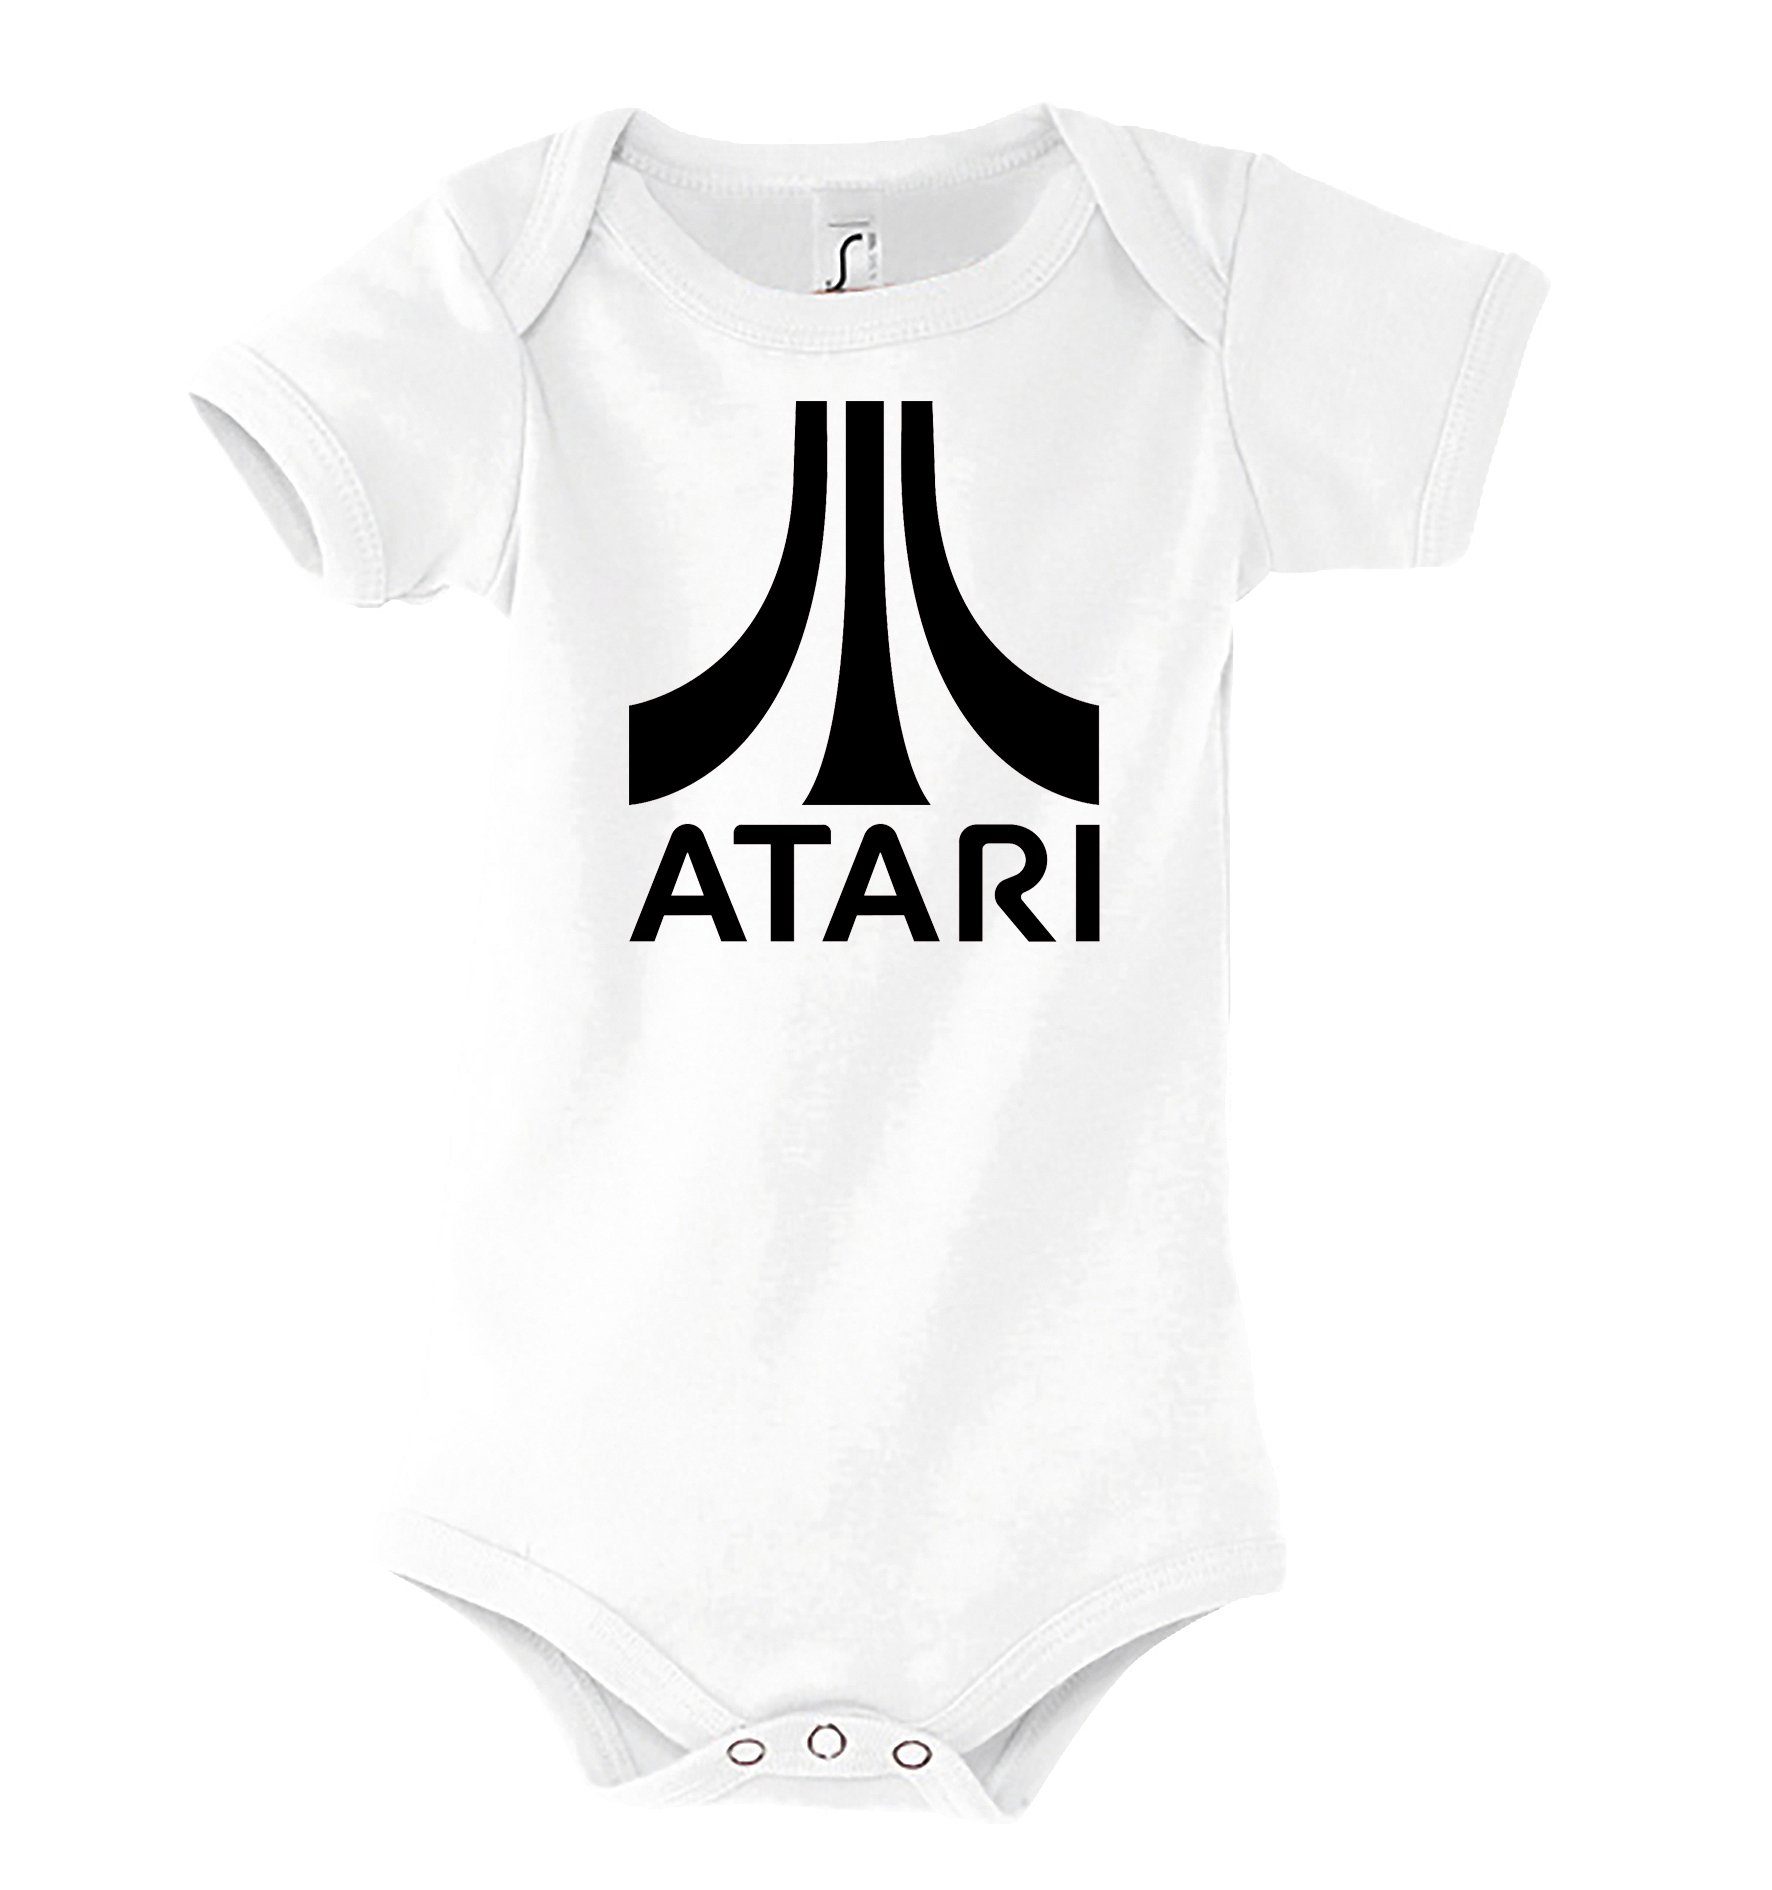 Youth Designz Kurzarmbody Baby Body Kurzarm Strampler Atari in tollem Design, mit Frontprint Weiß